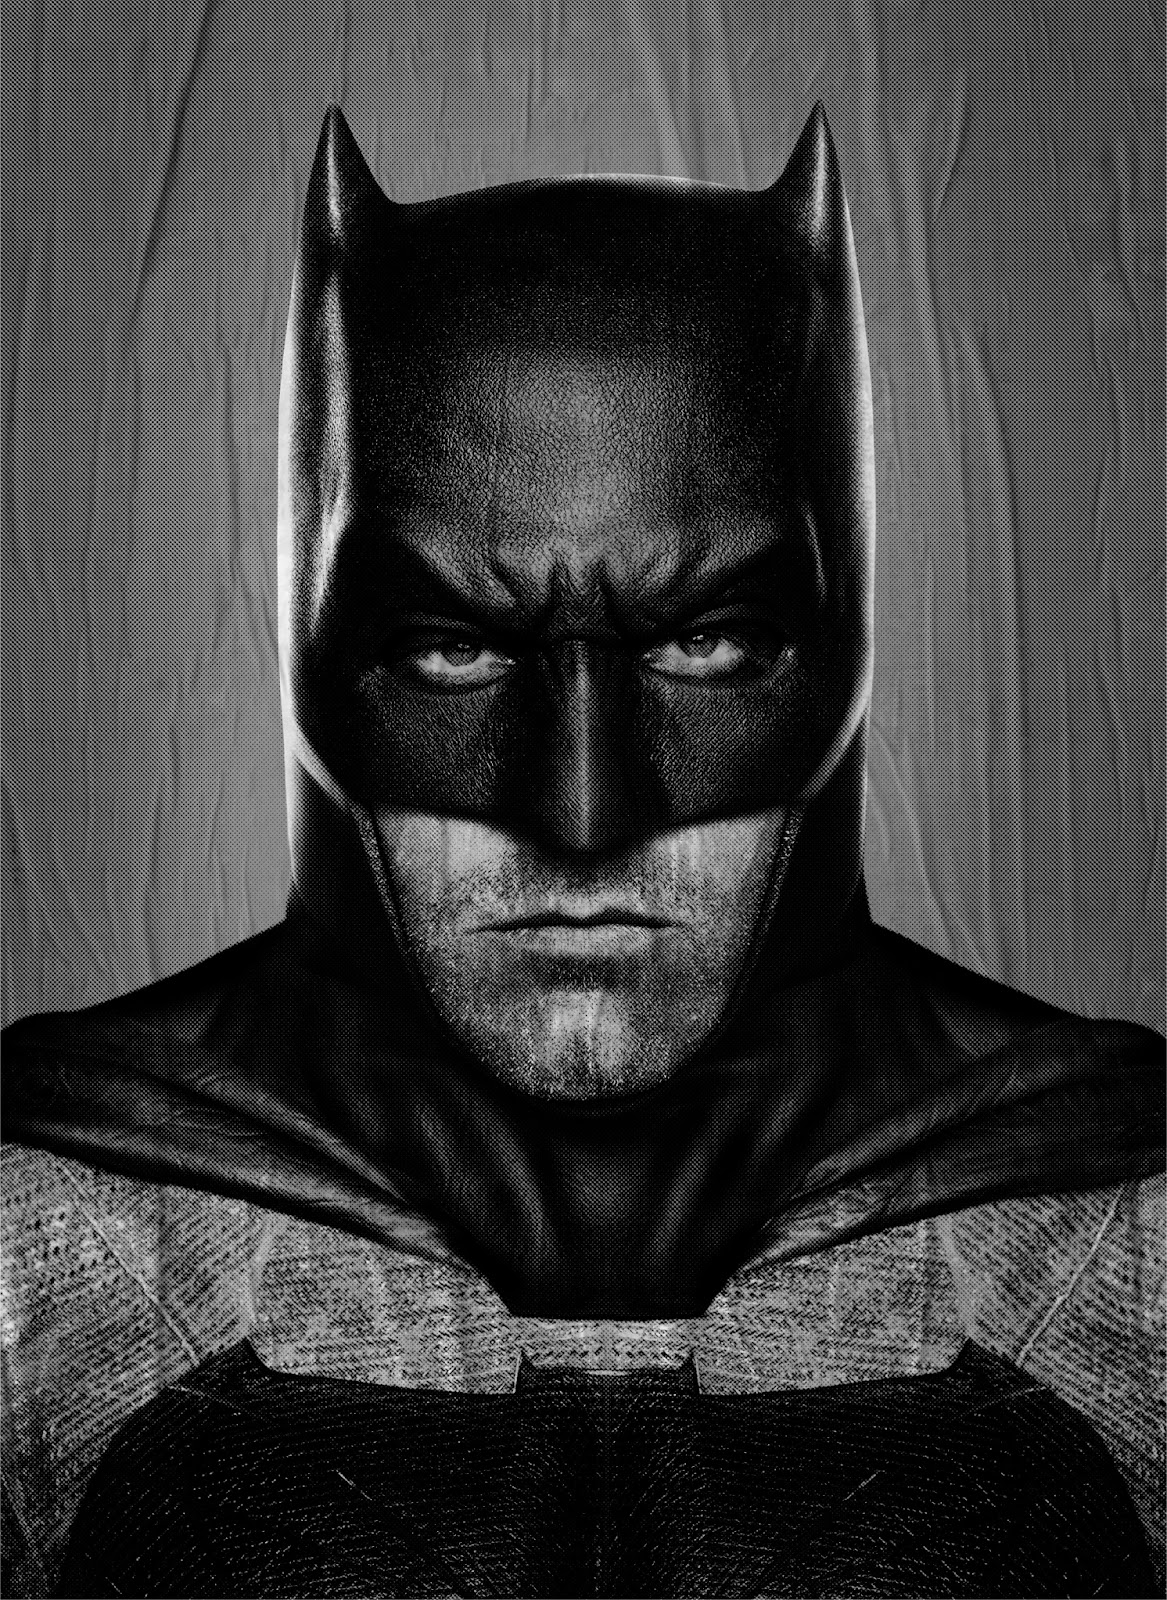 ｃｉａ こちら映画中央情報局です Batman V Superman コミックヒーロー映画の超話題作 バットマン V スーパーマン ドーン オブ ジャスティス のベン アフレック監督の新ダークナイトのカラーのポスターが流出